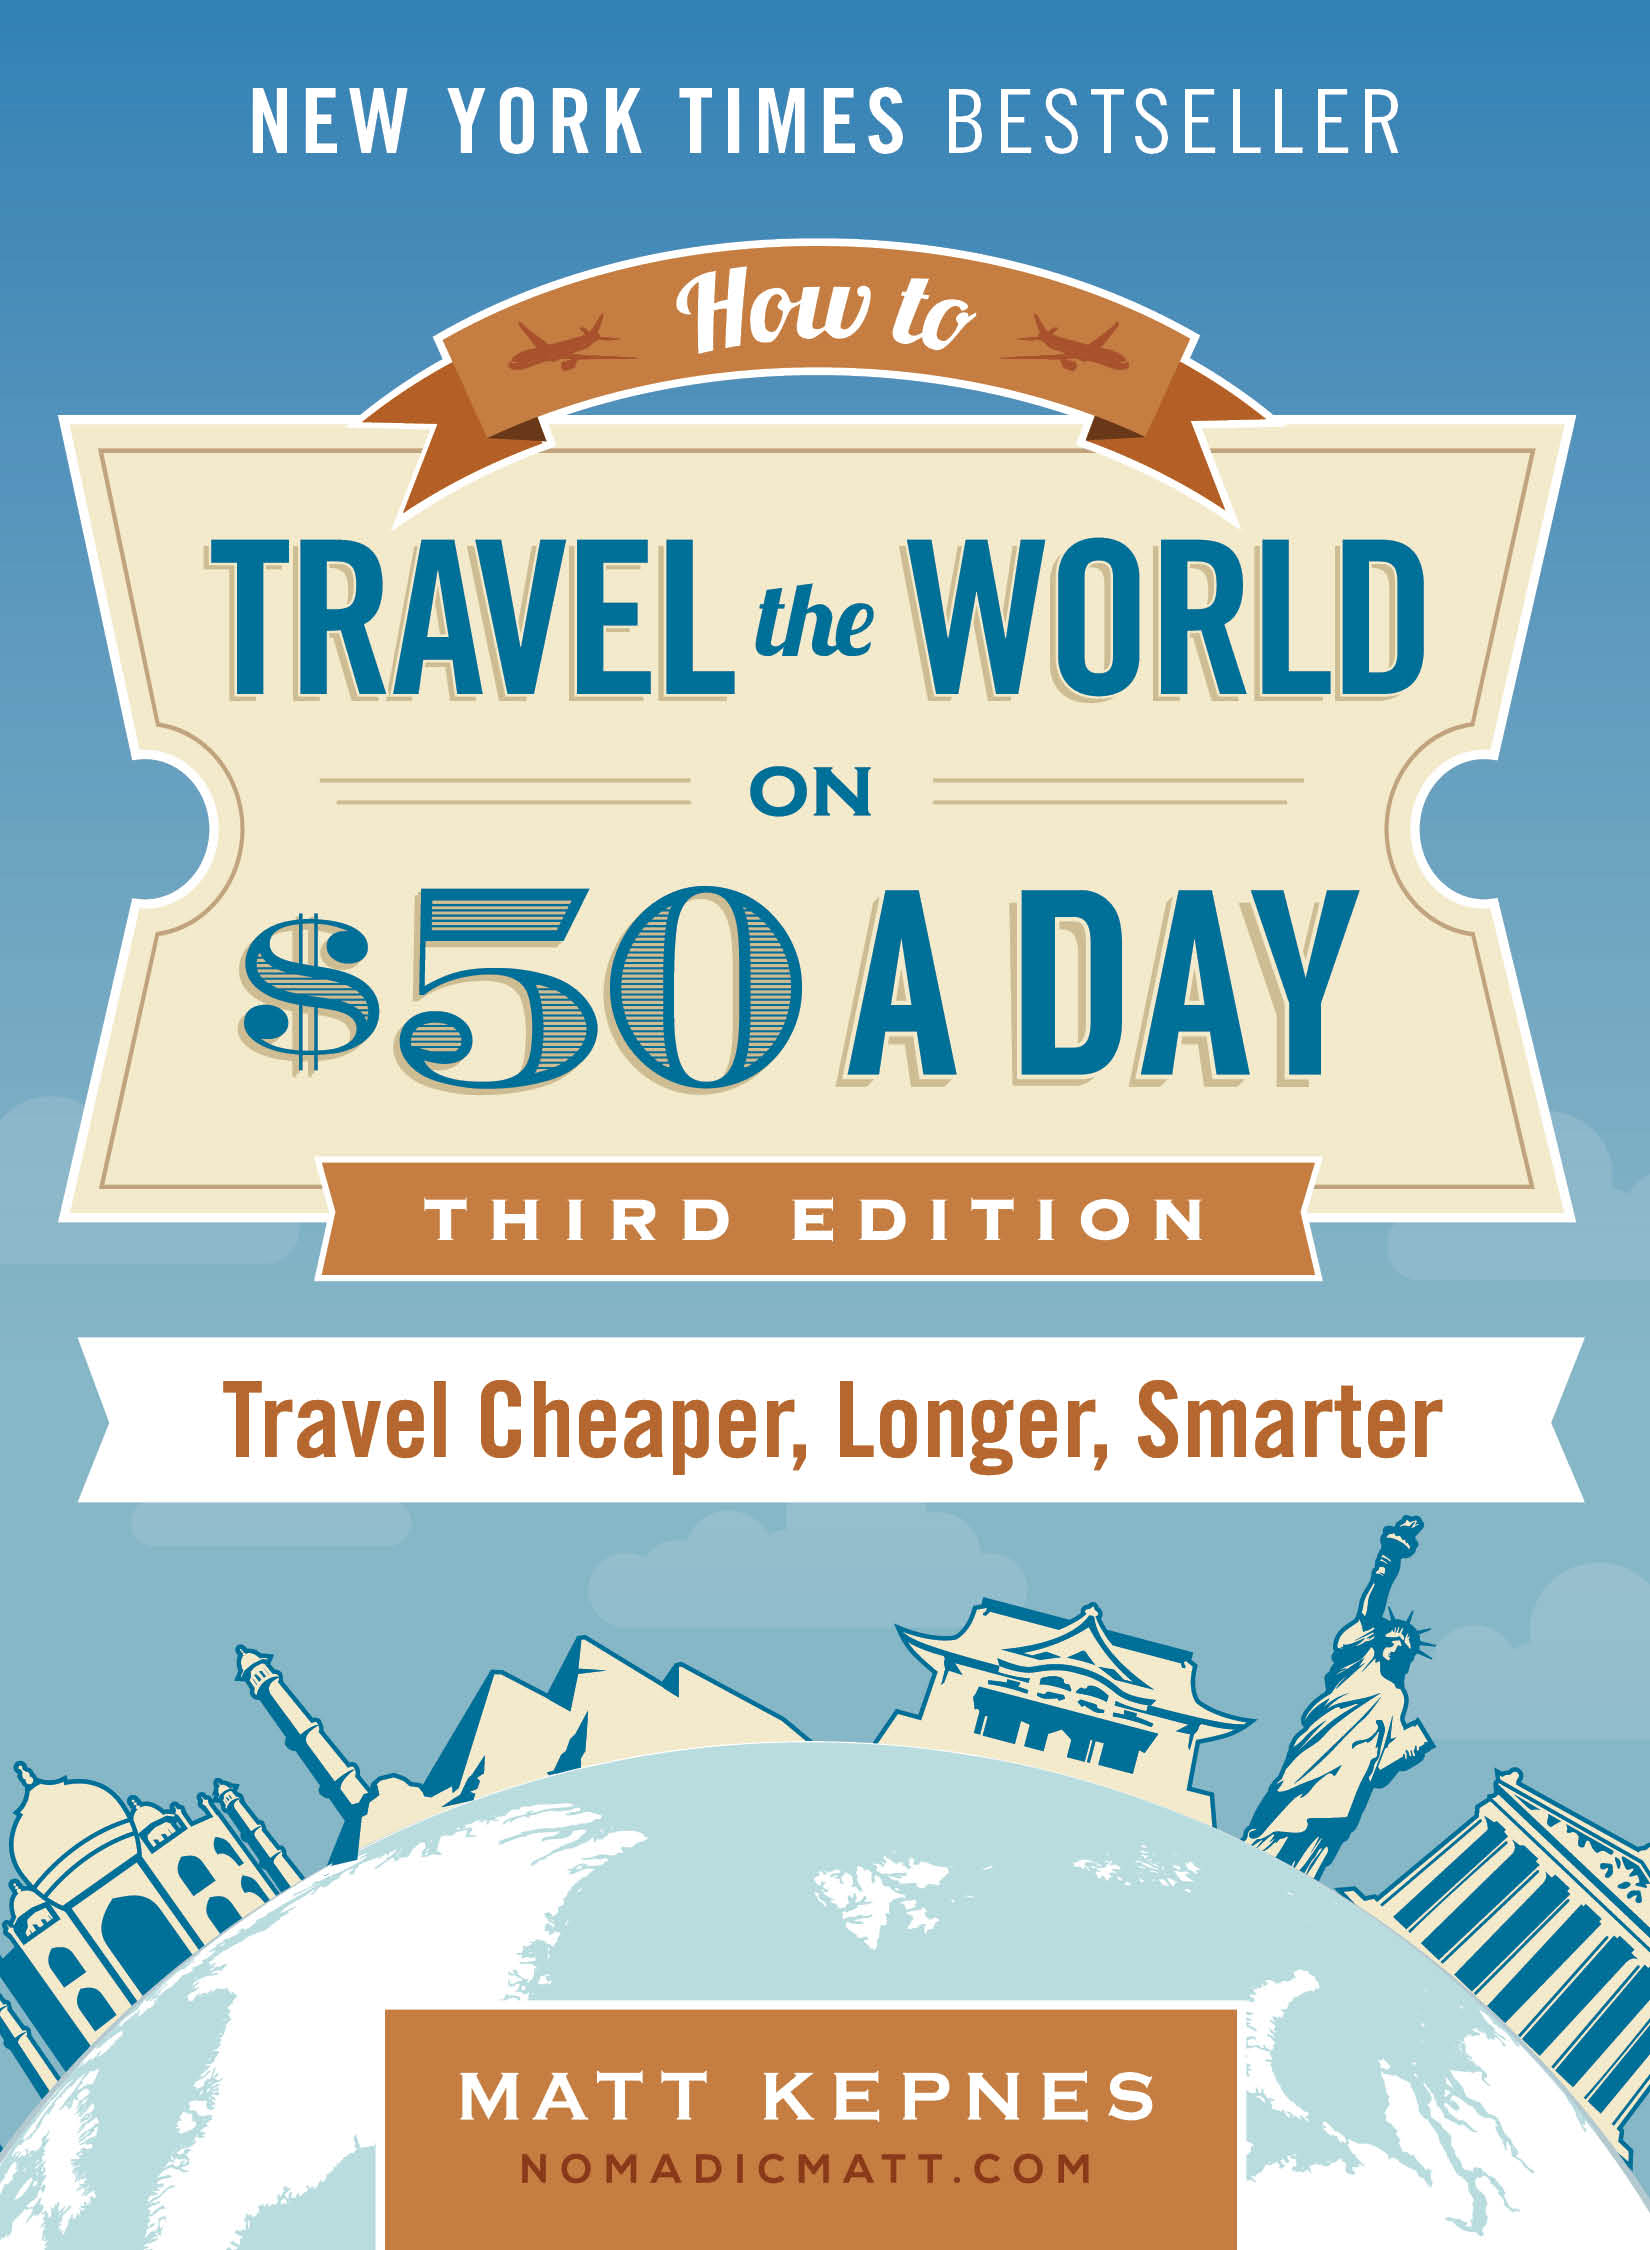 流浪马特的《如何环游世界》每天50美元